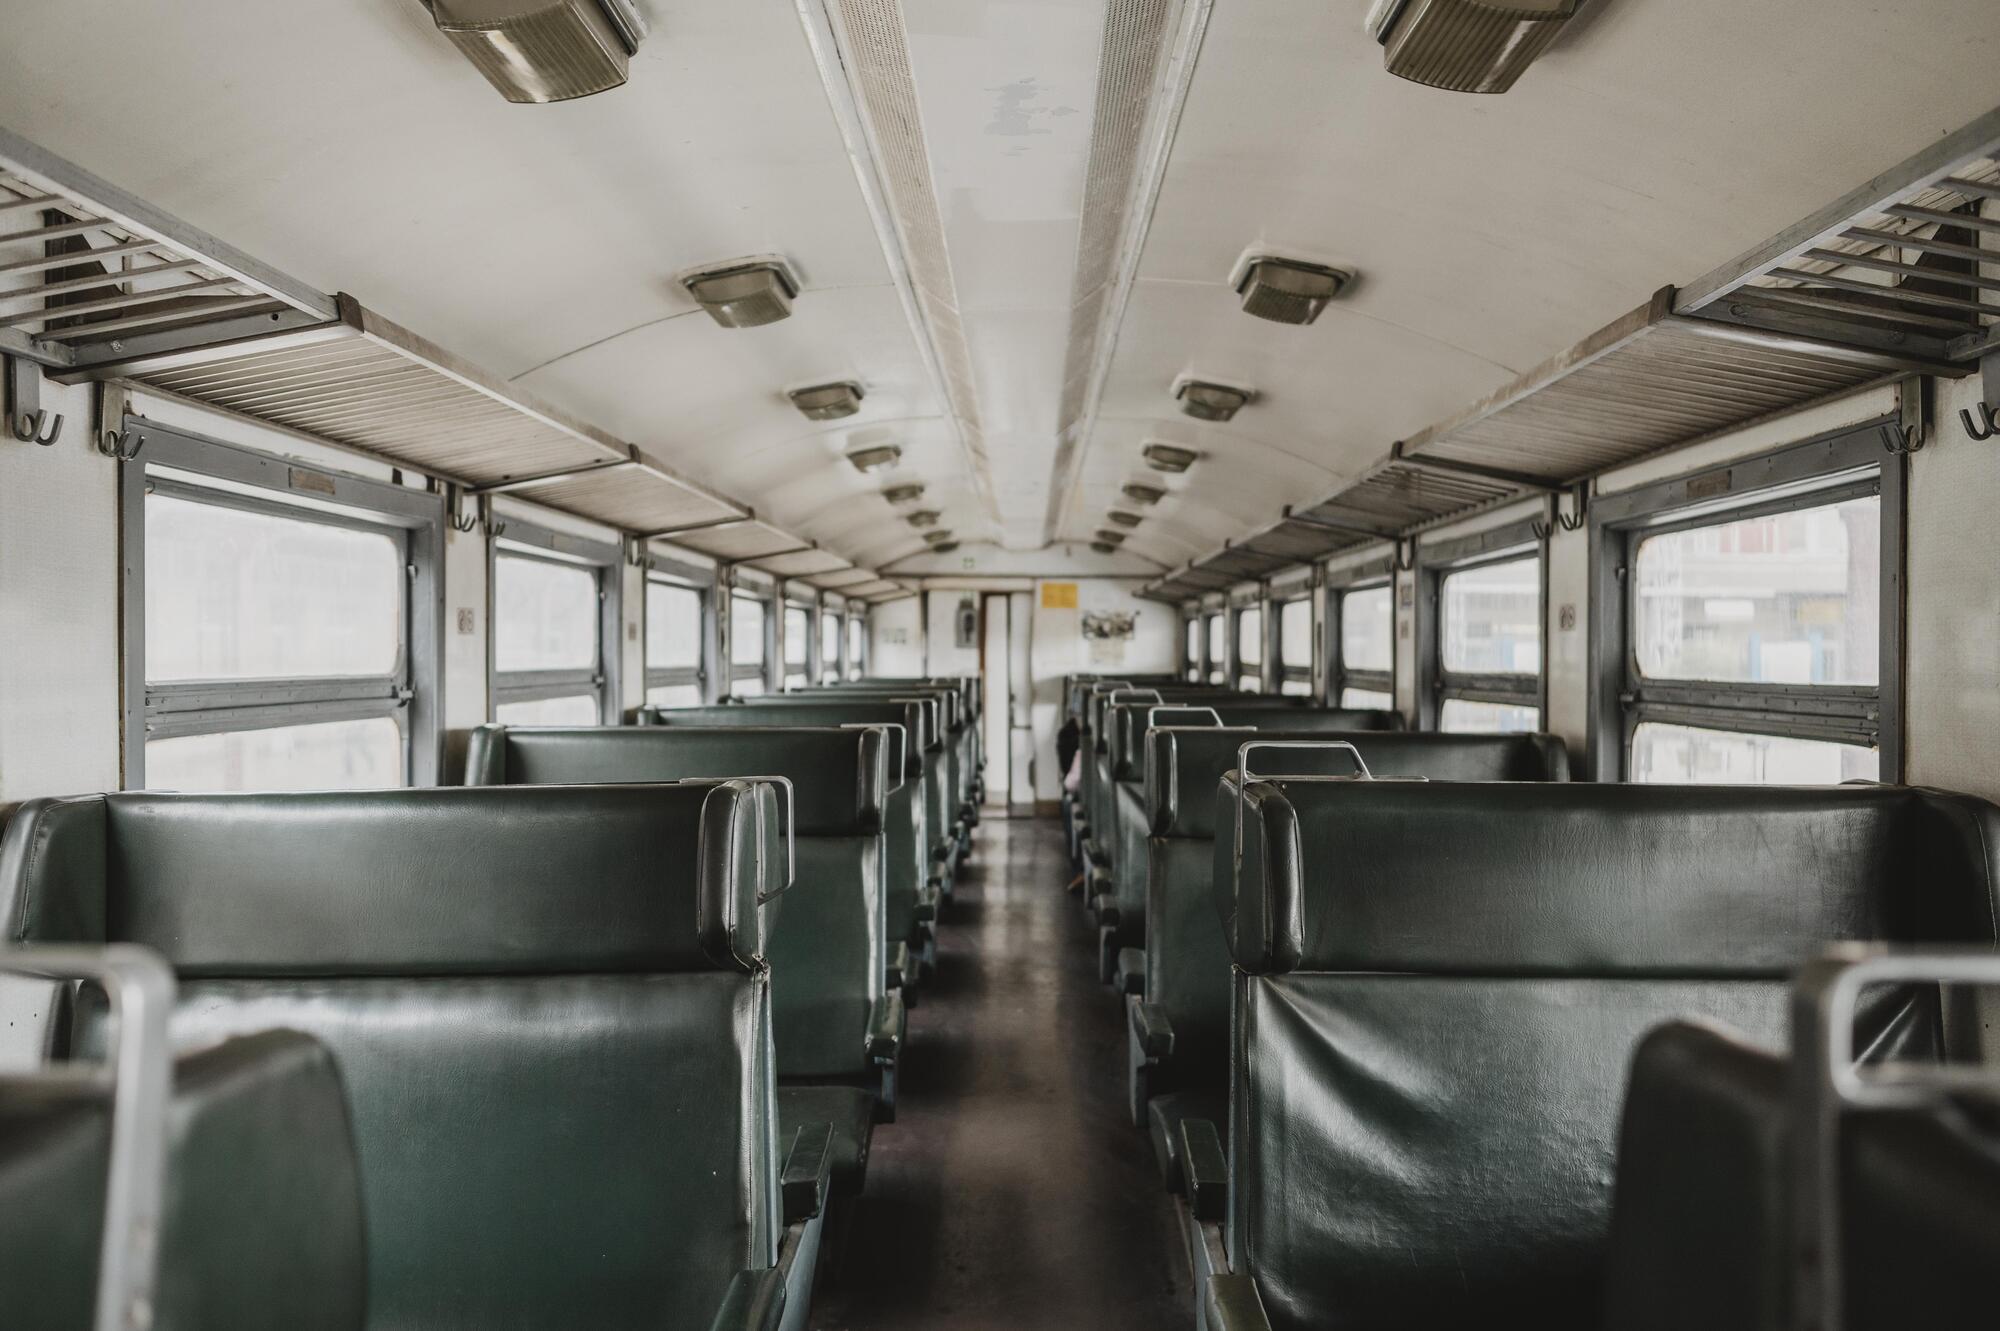 Під Черніговом дітей перестали возити до школи: шкільний автобус не зупиняється навіть, якщо є вільні місця. Що трапилось